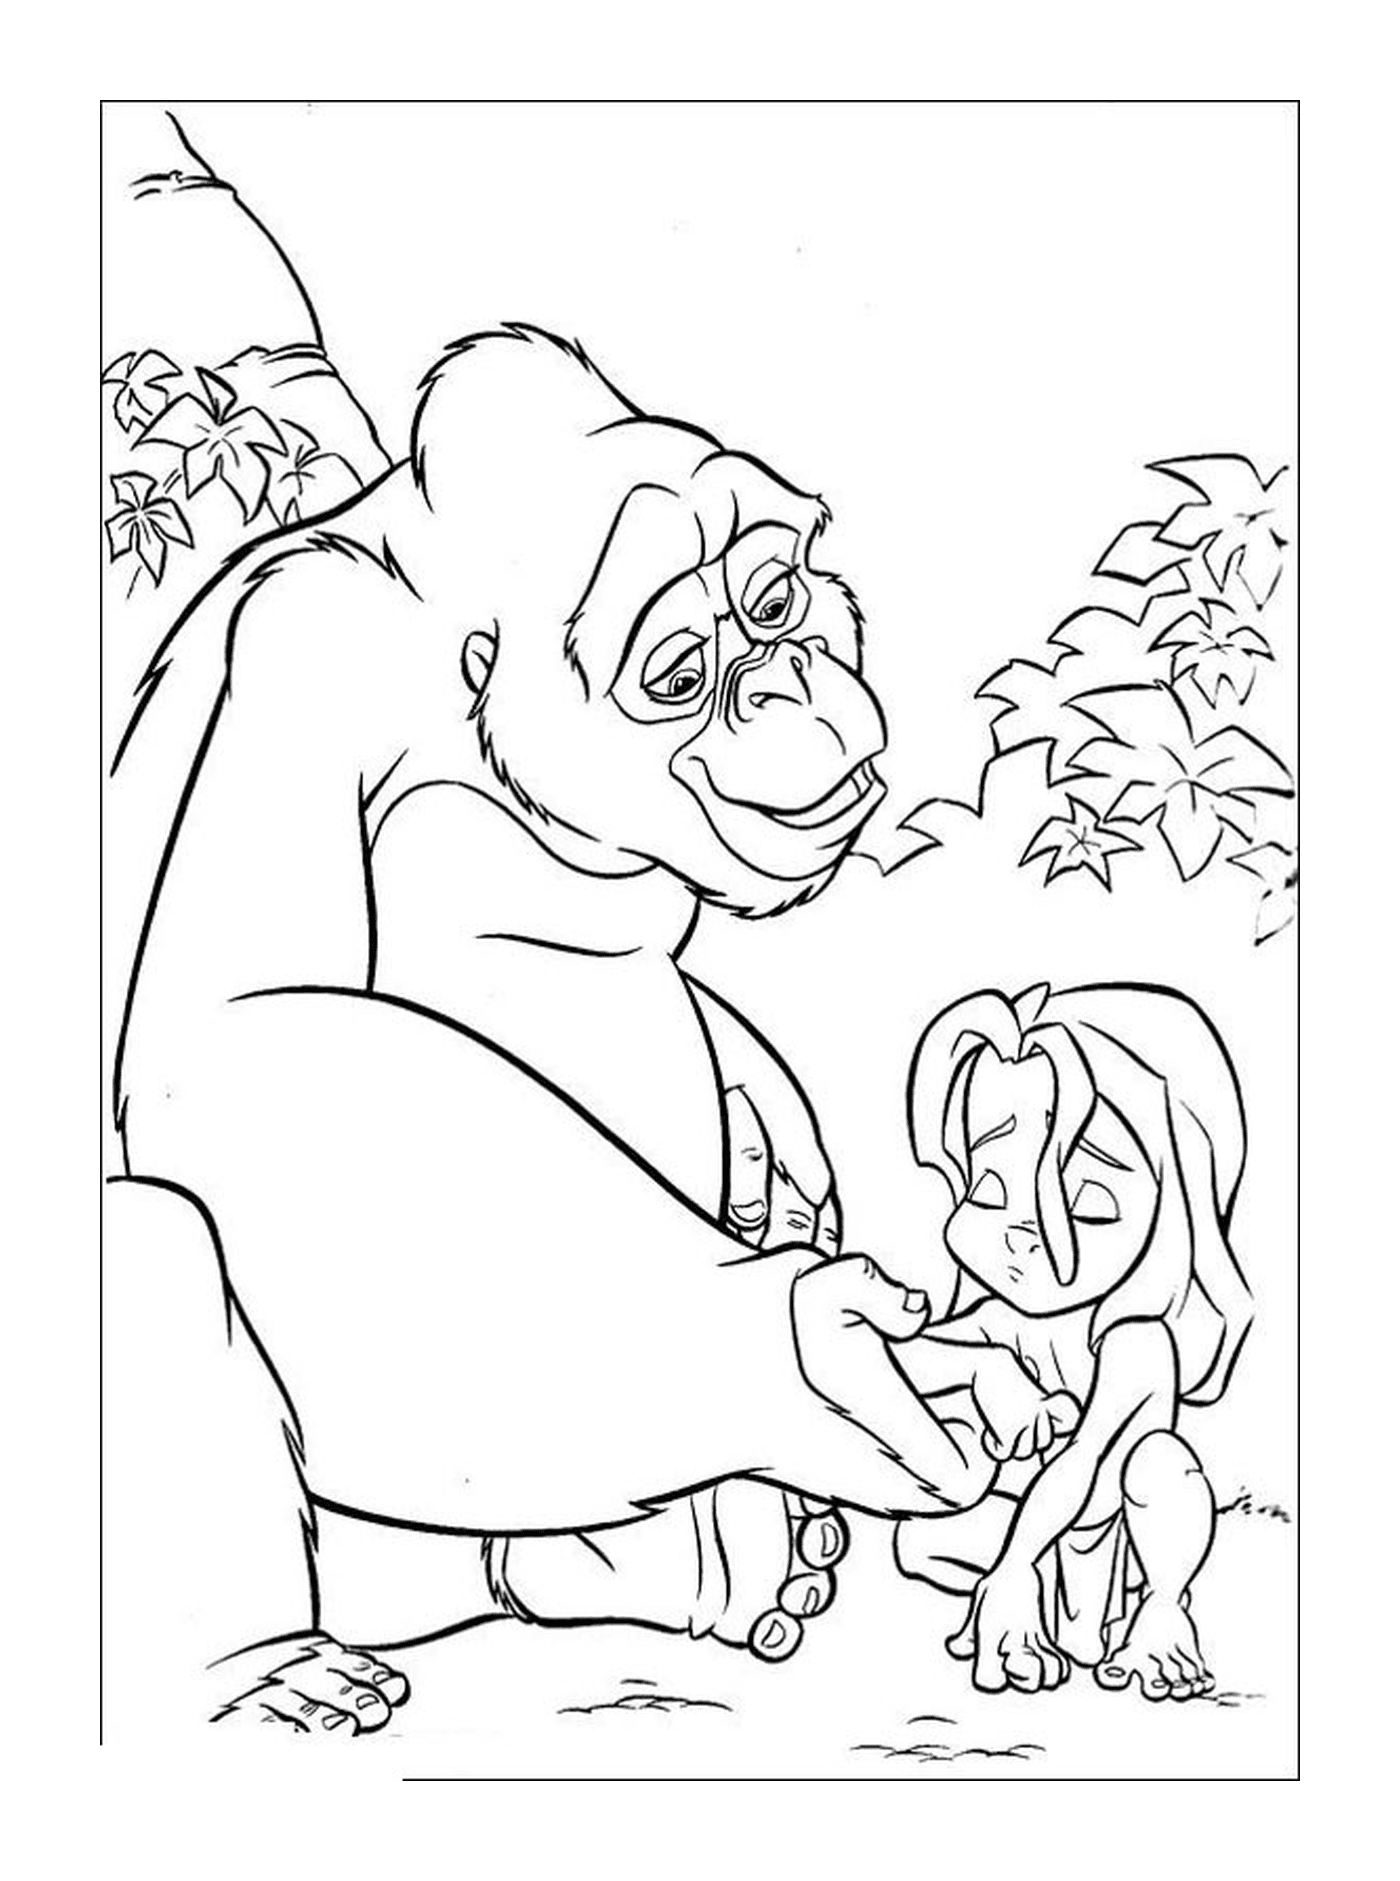  大猩猩抱着一个女孩在她的怀里 